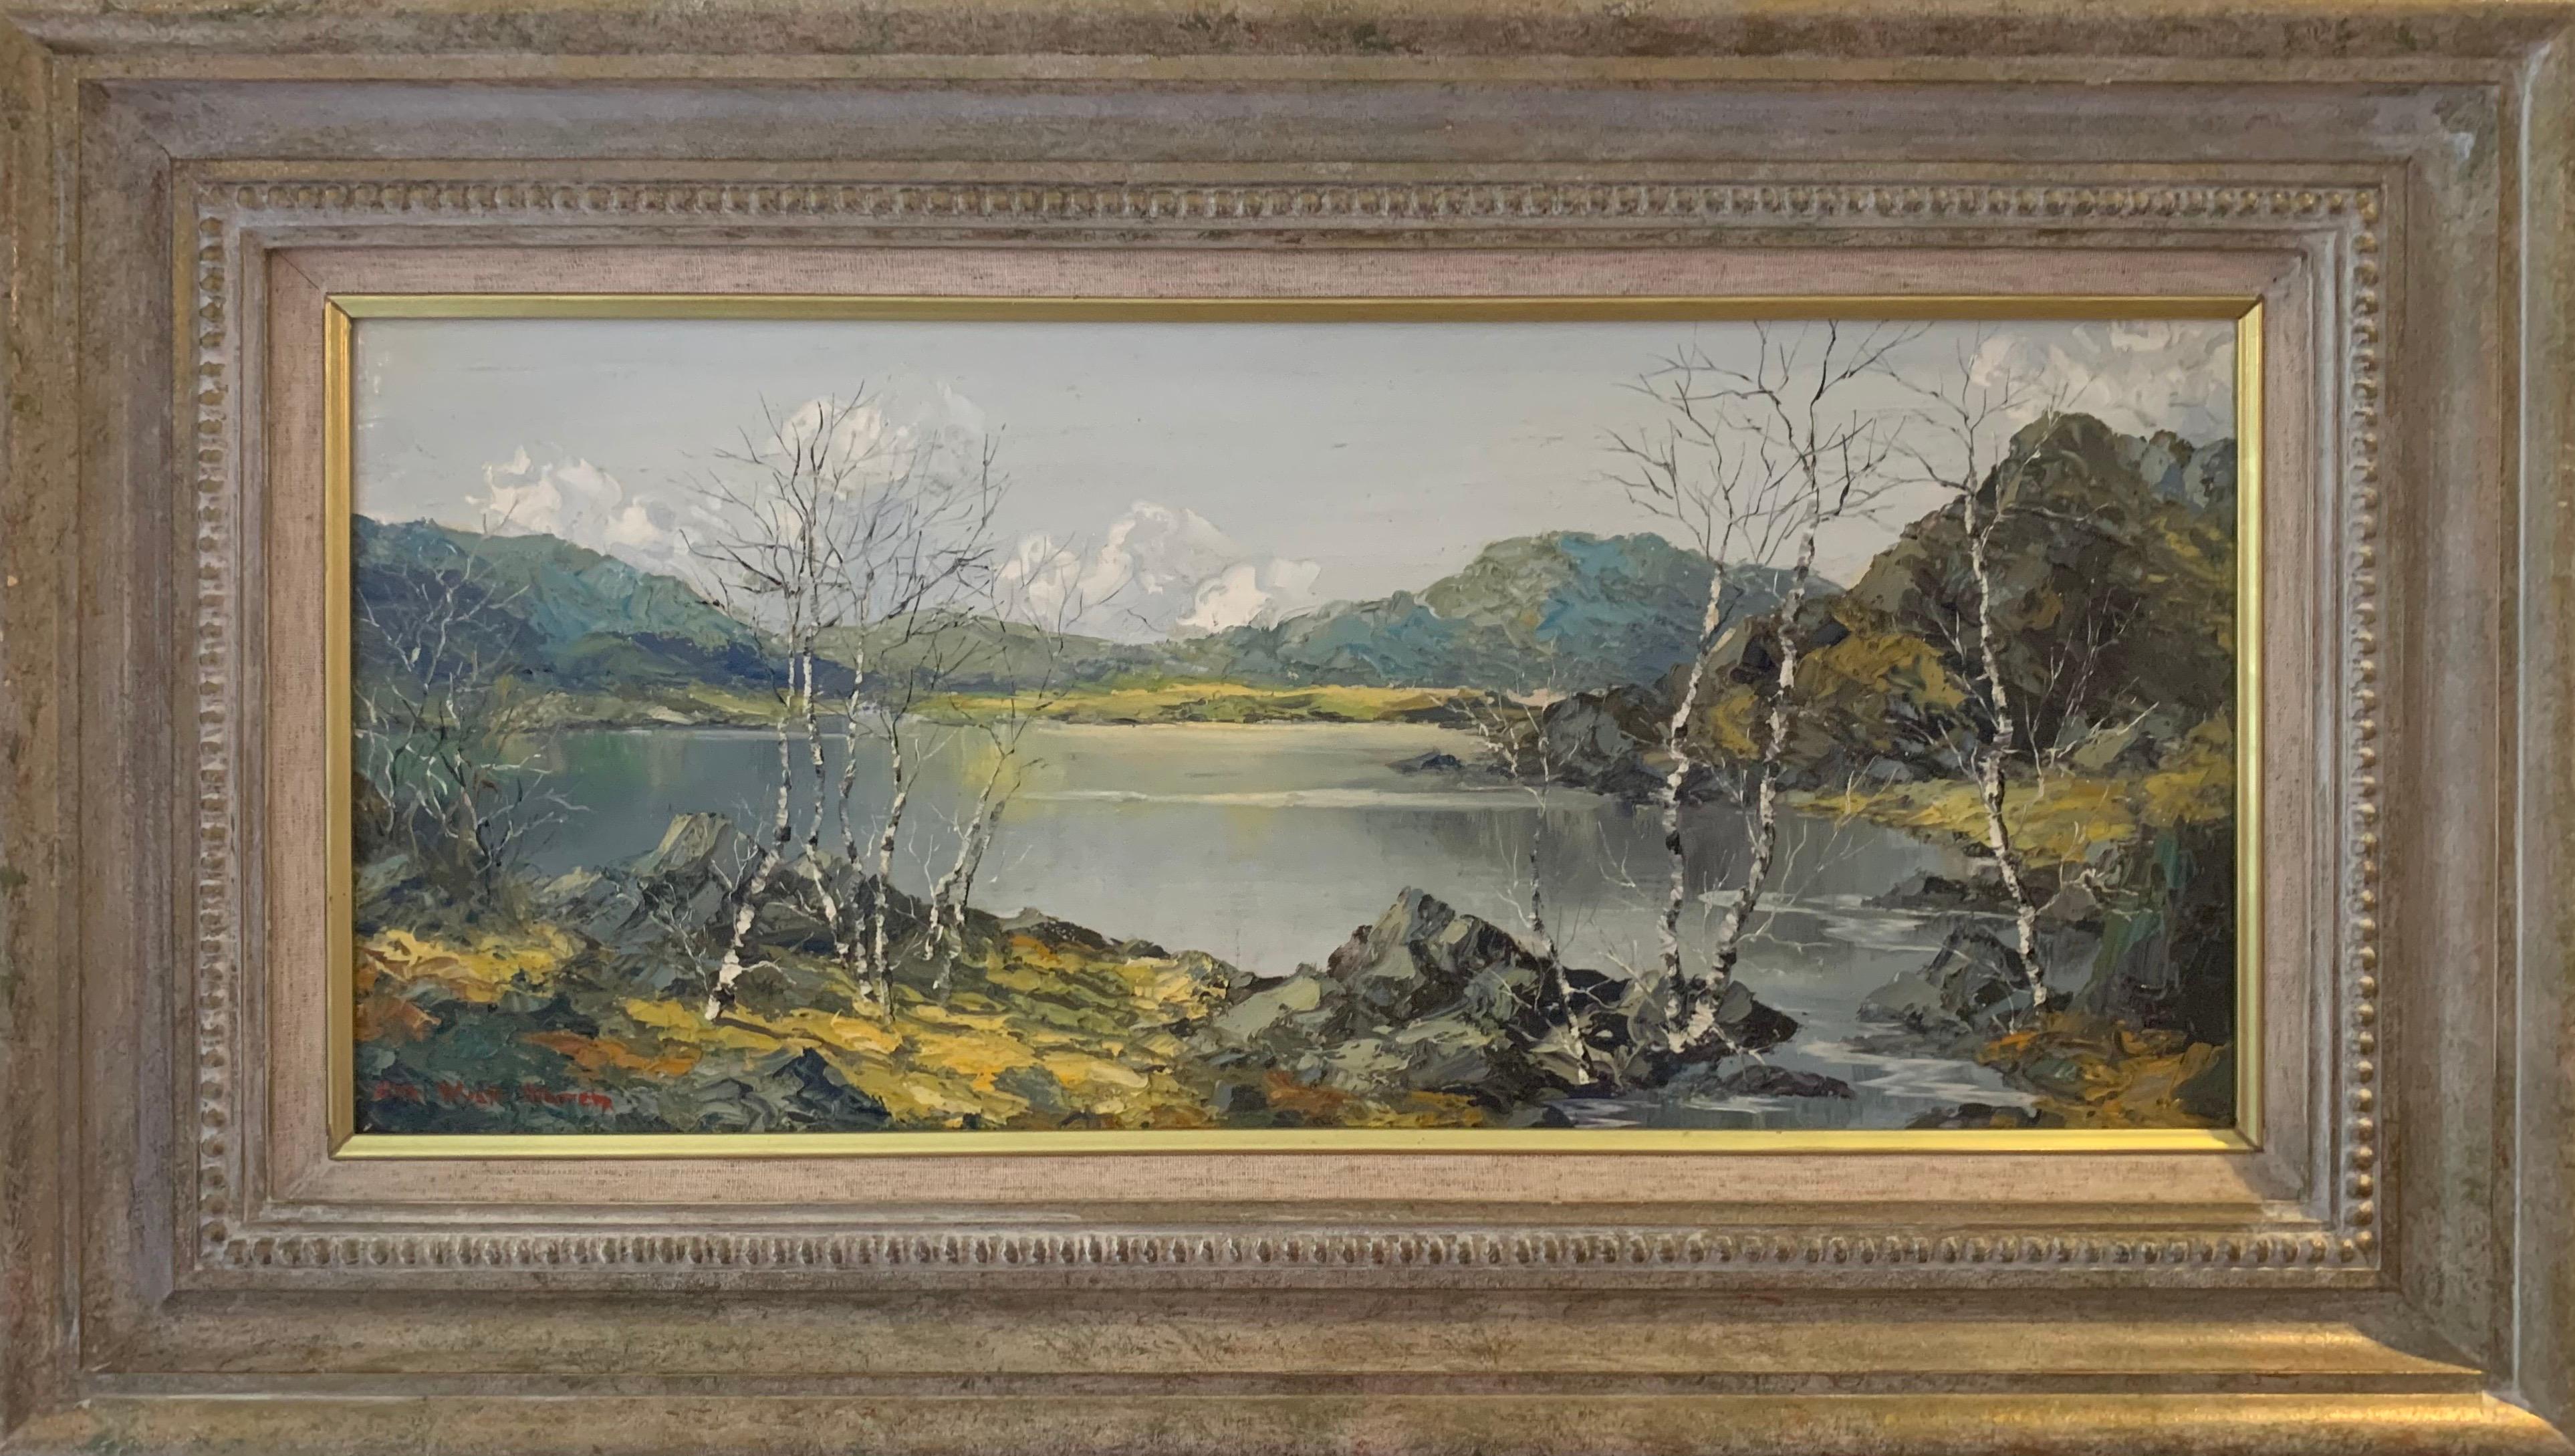 Ölgemälde von Snowdon Mountains & Lakes in Wales von Modern British Artist